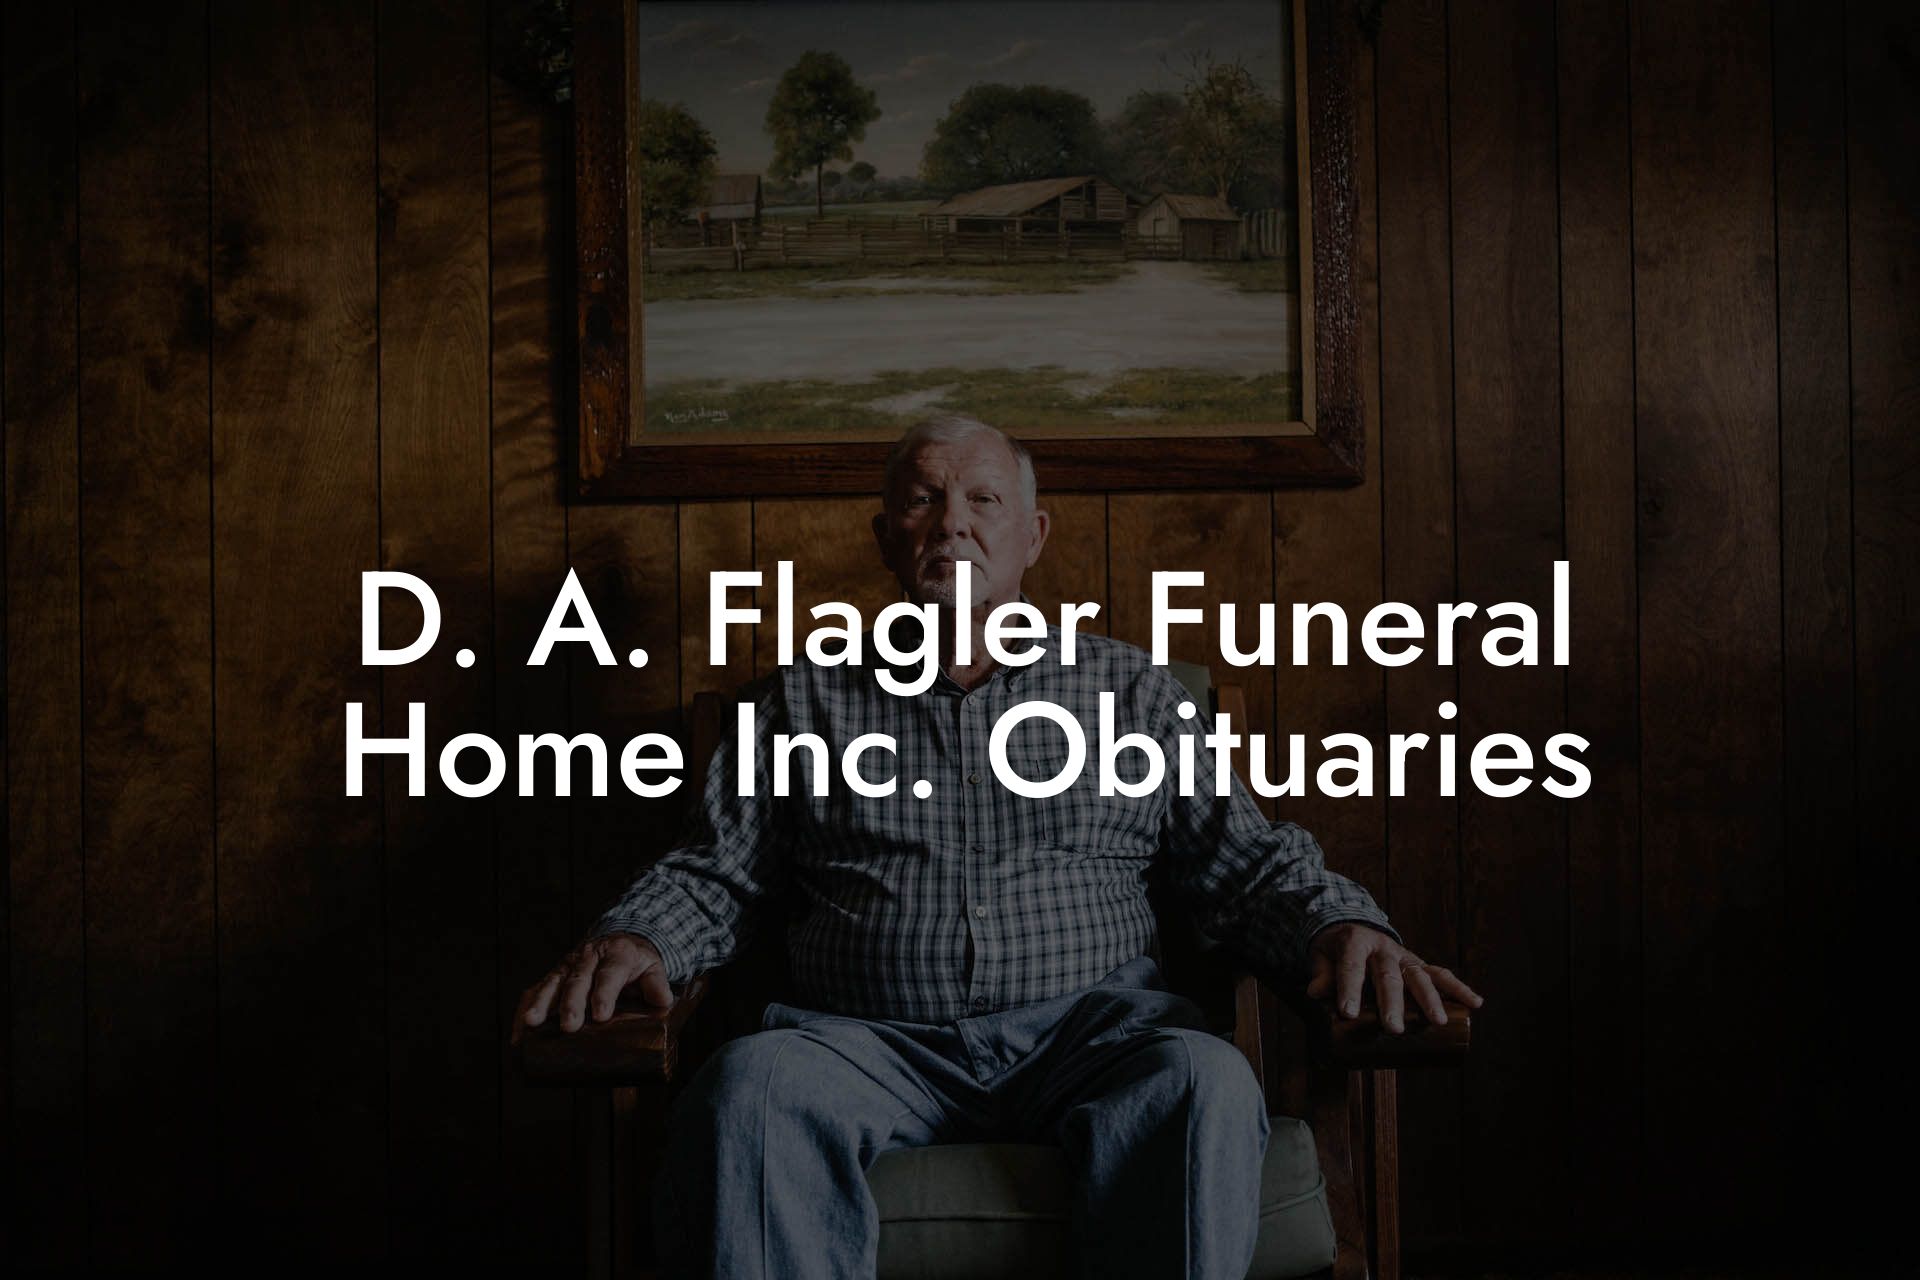 D. A. Flagler Funeral Home Inc. Obituaries